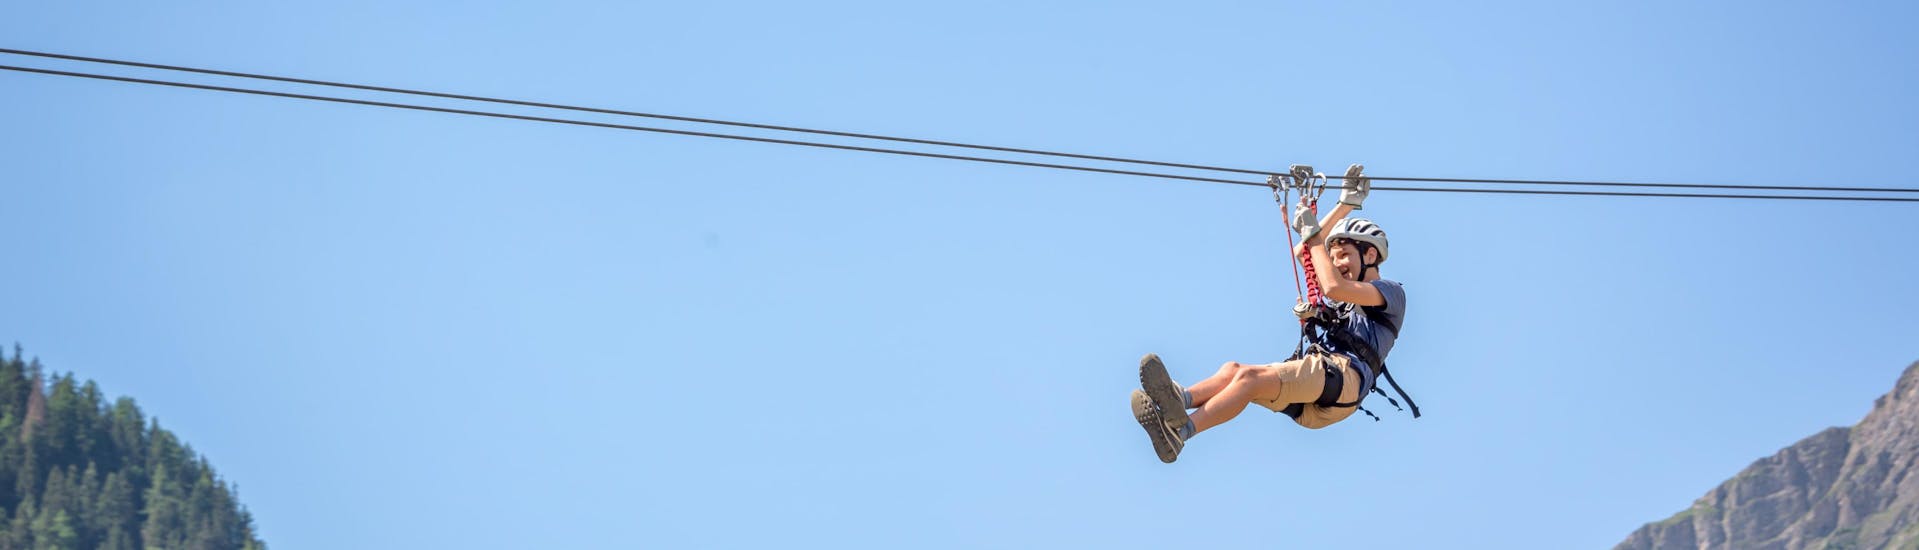 Un giovane uomo in volo sospeso da una zipline nell'hotspot di zipline presso Table Mountain National Park.